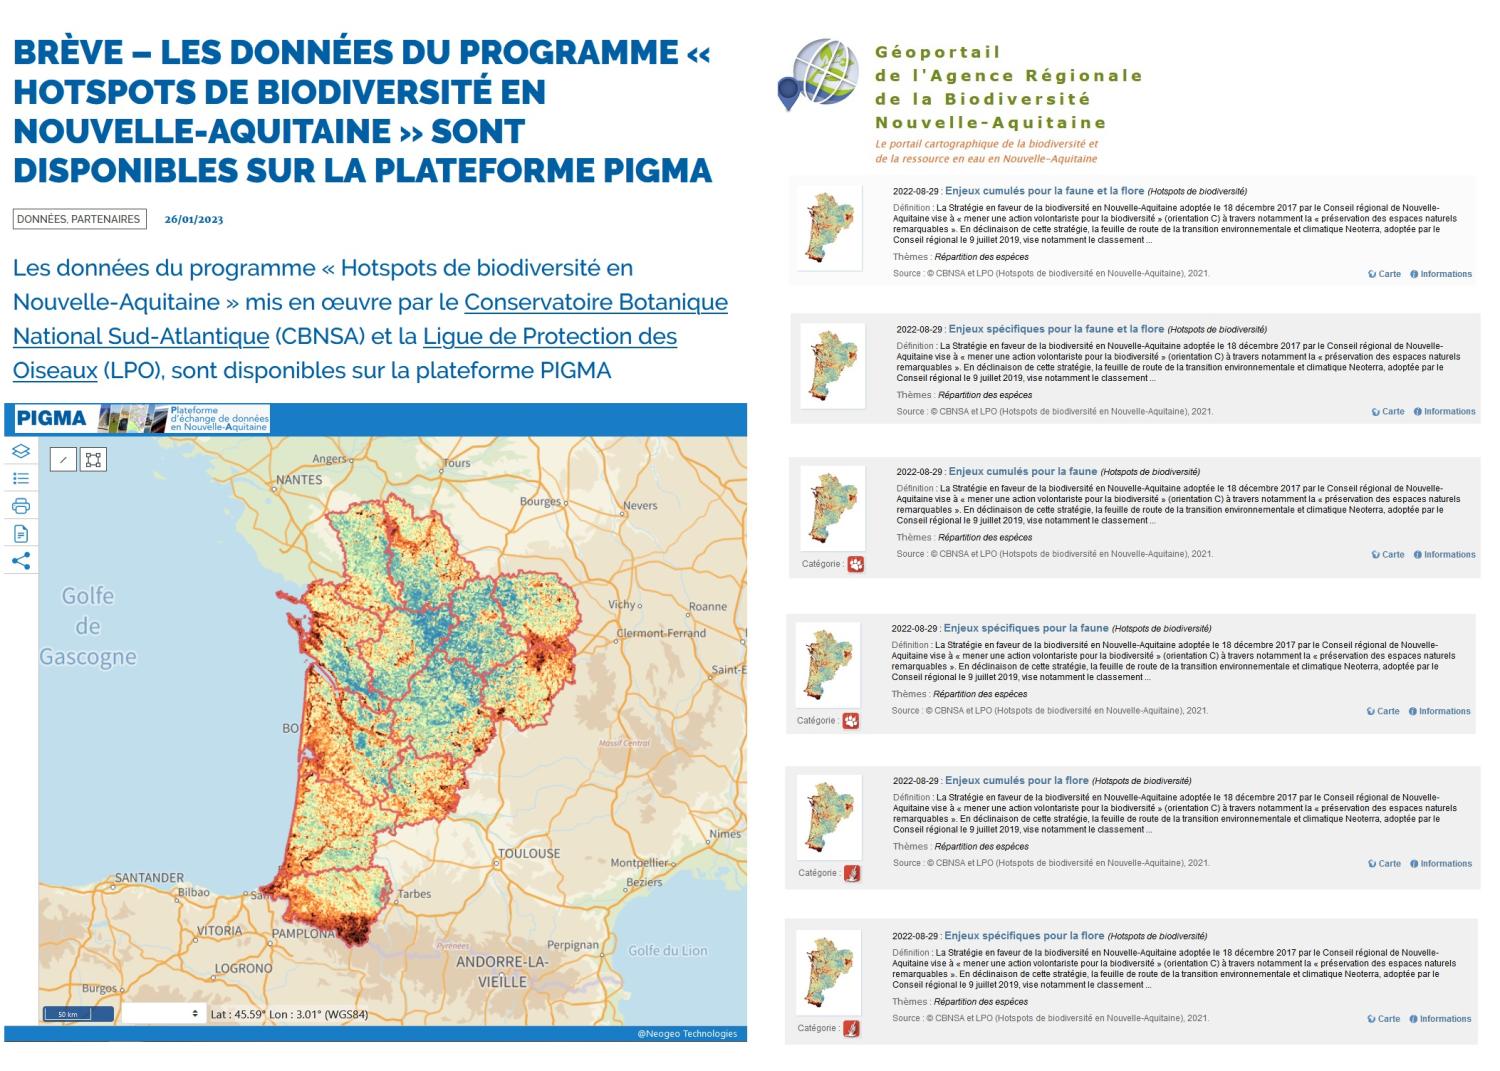 Diffusion des couches de hotspots de biodiversité en Nouvelle-Aquitaine